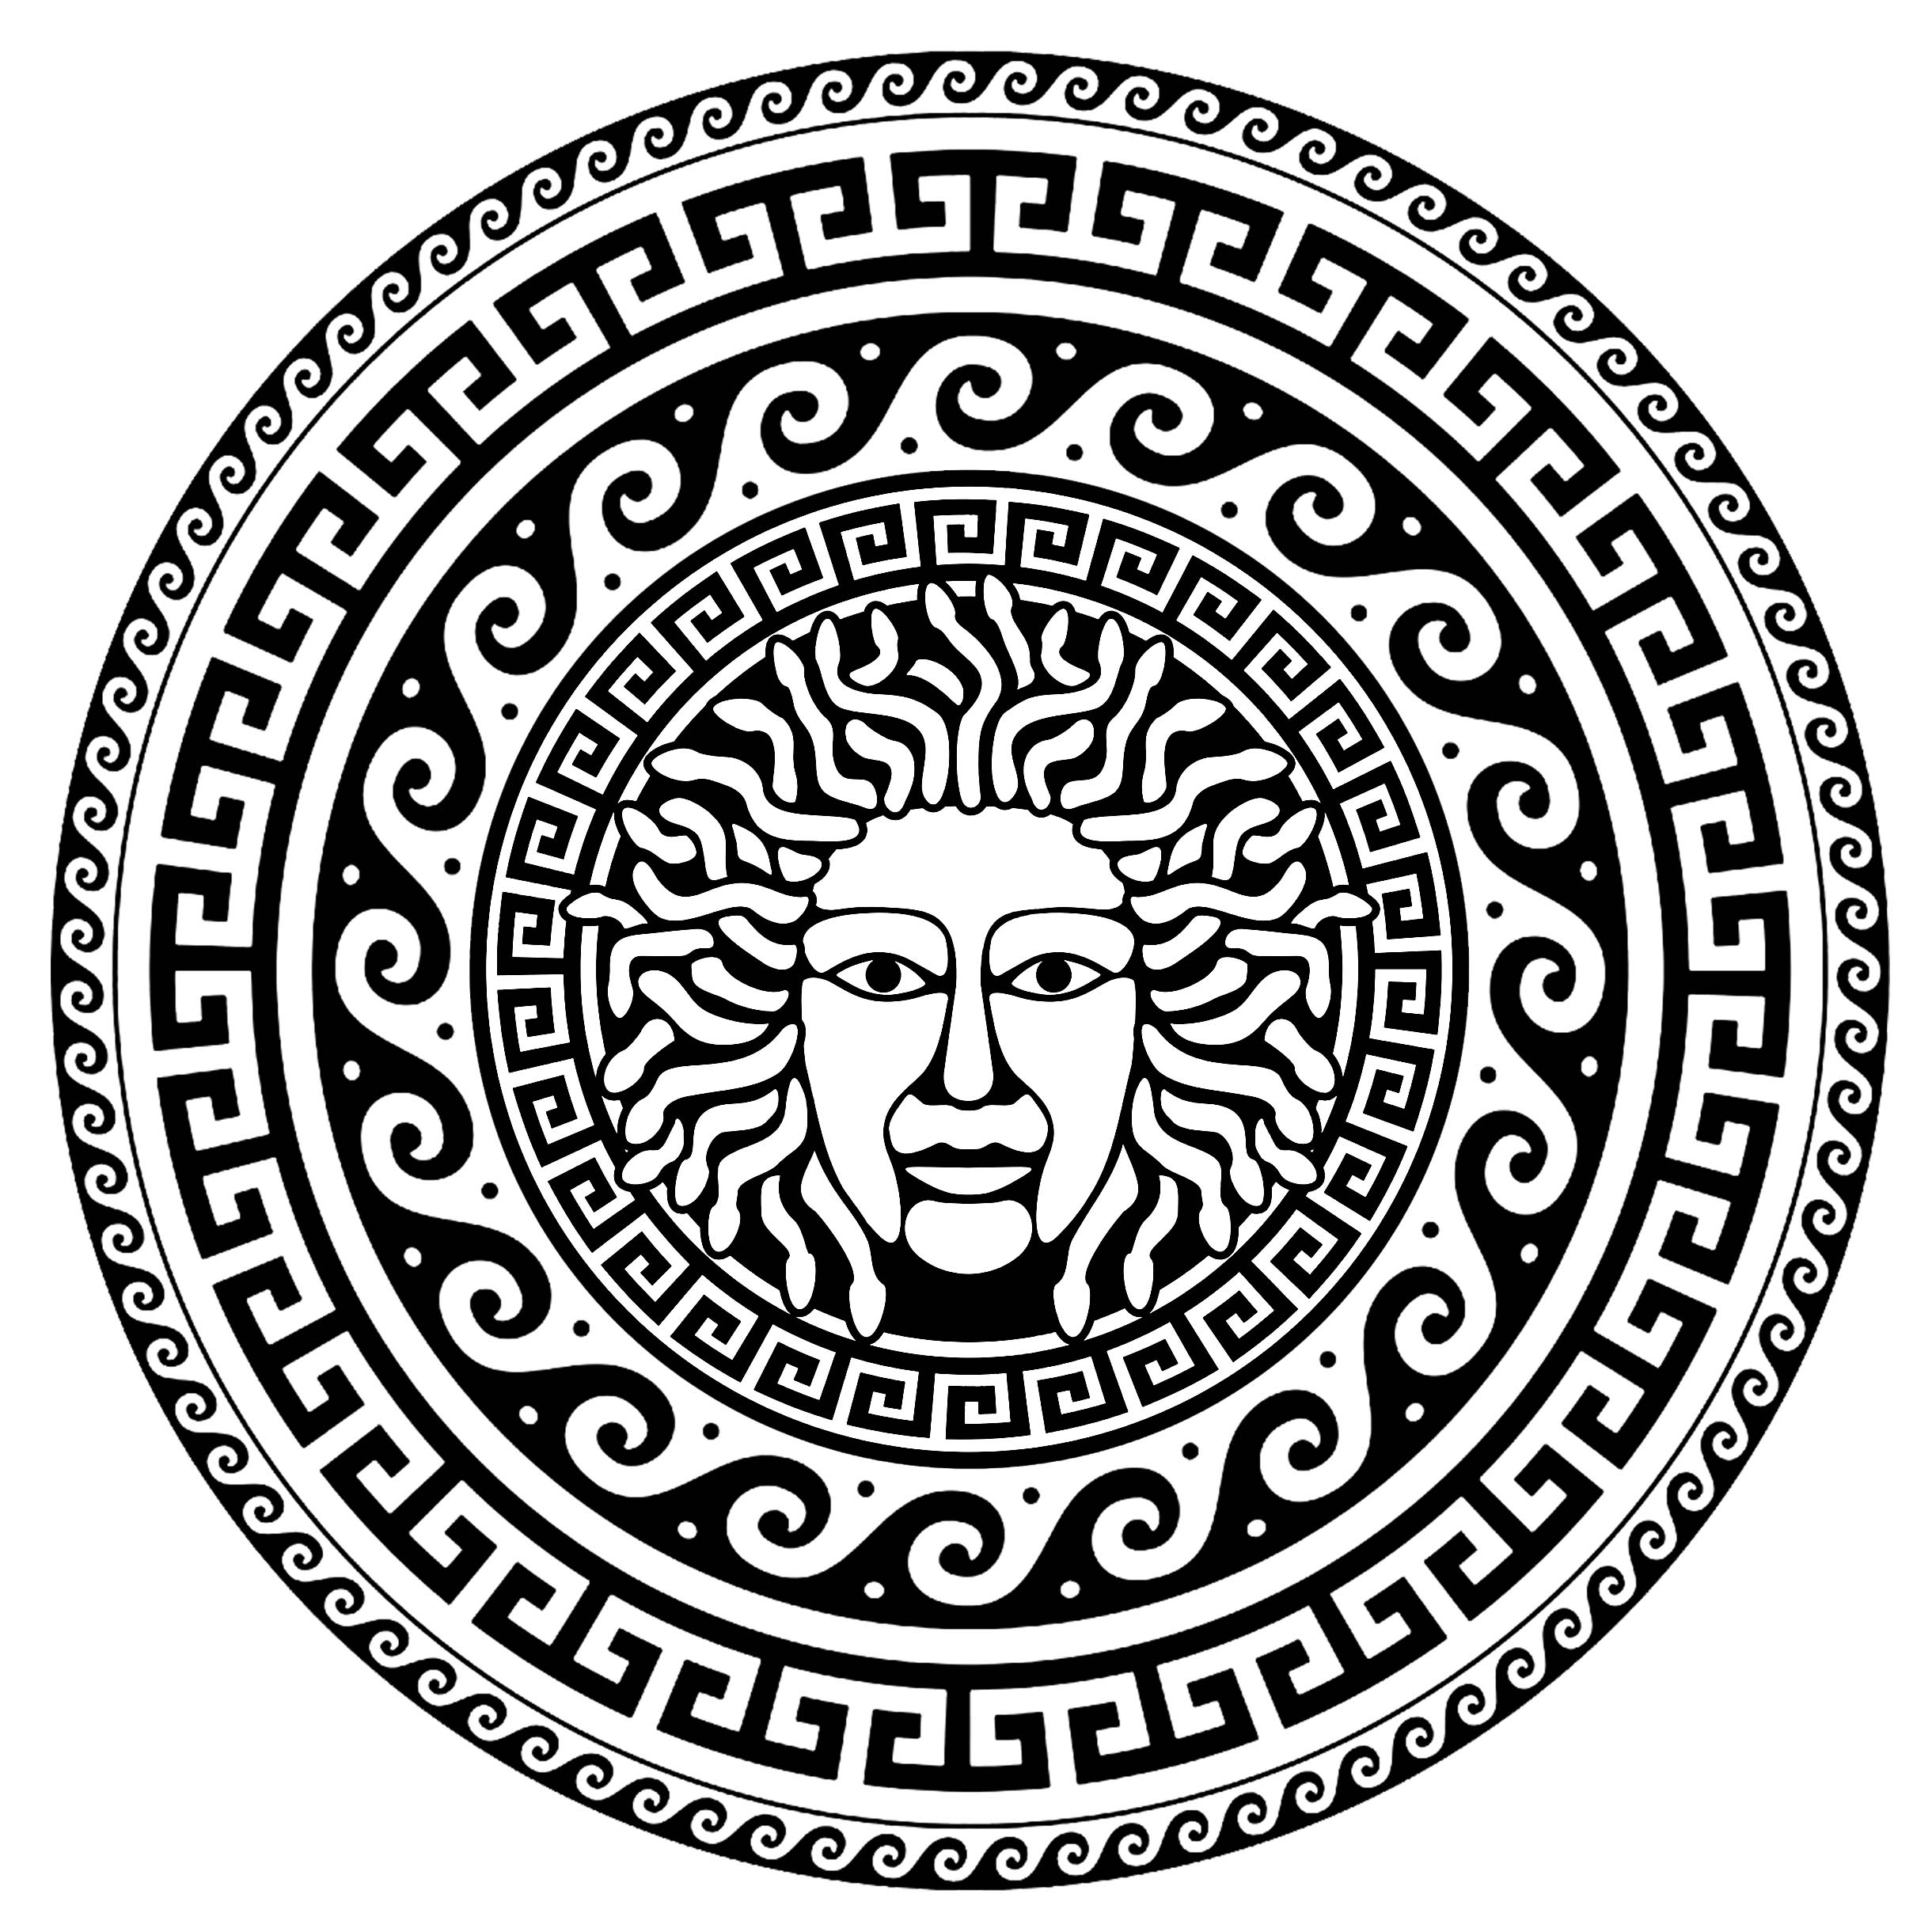 Medusa no centro de um círculo de motivos gregos típicos - 1. Antes de ser transformada em górgona por Atena, Medusa era uma sacerdotisa de beleza incomparável.
